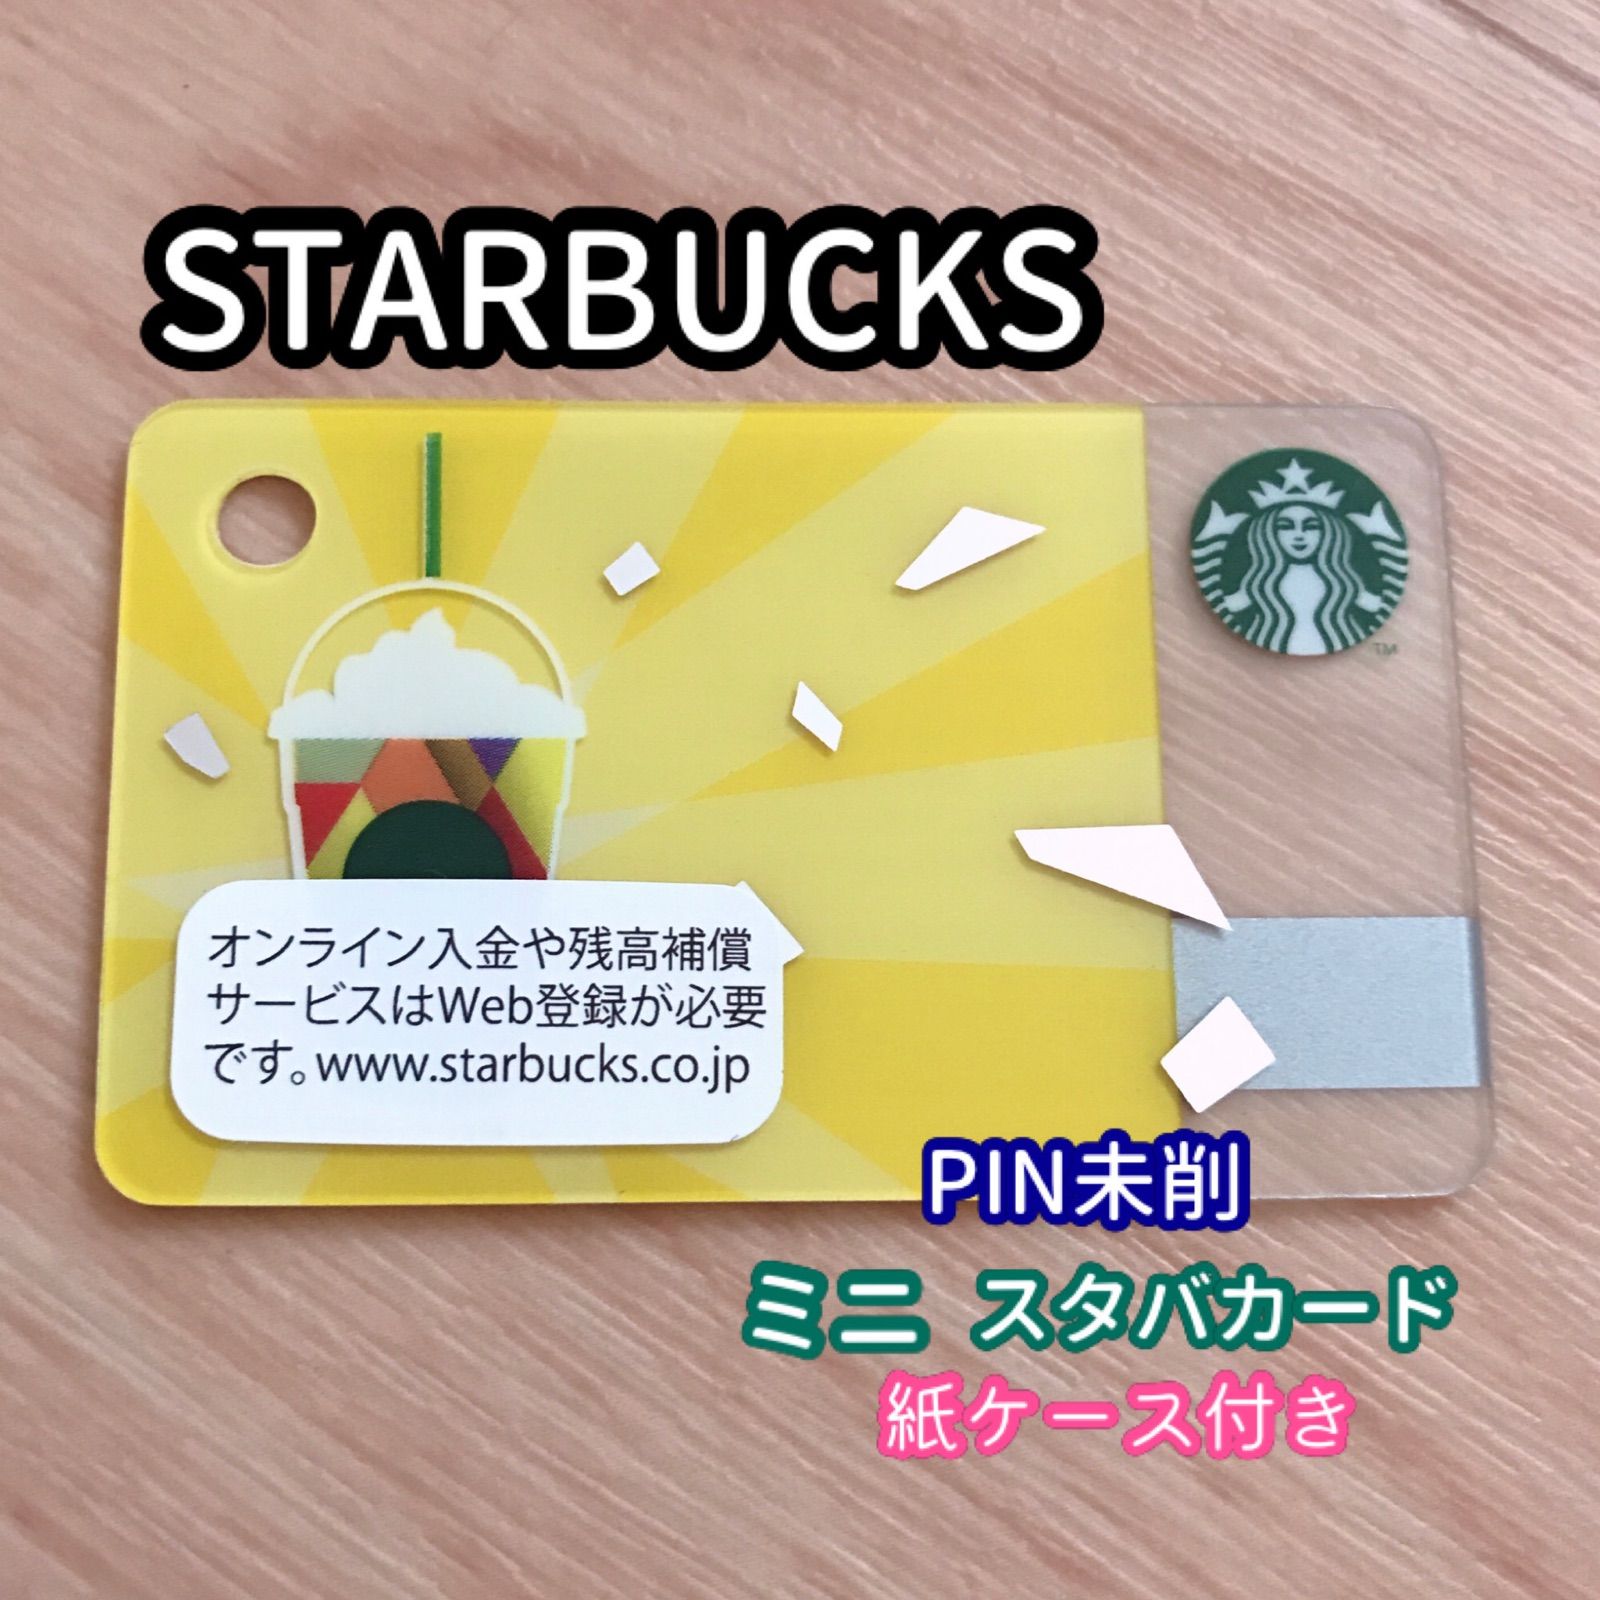 STARBUCKS ミニ カード PIN未削 残高ゼロ スタバカード 雑貨いろいろ メルカリ